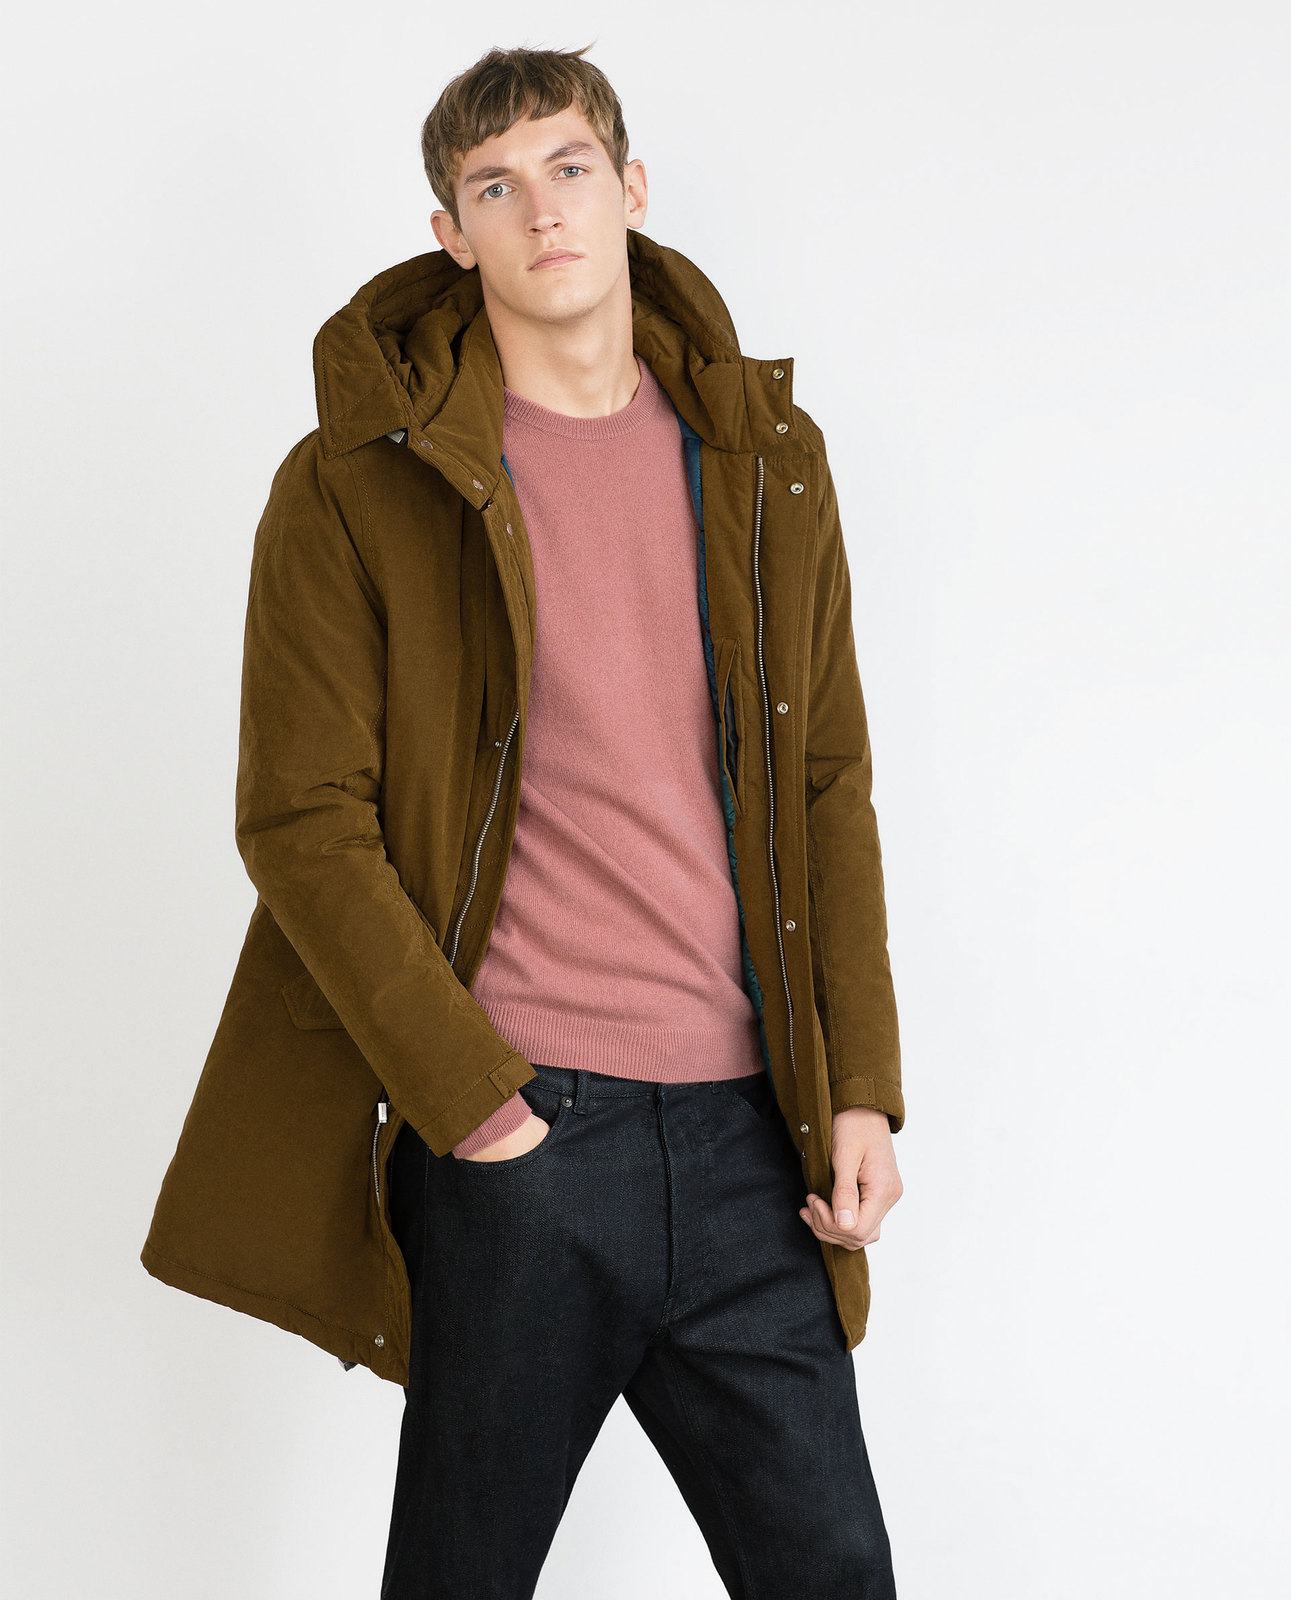 Zara barna férfi télikabát 2015.10.15 #89033 fotója